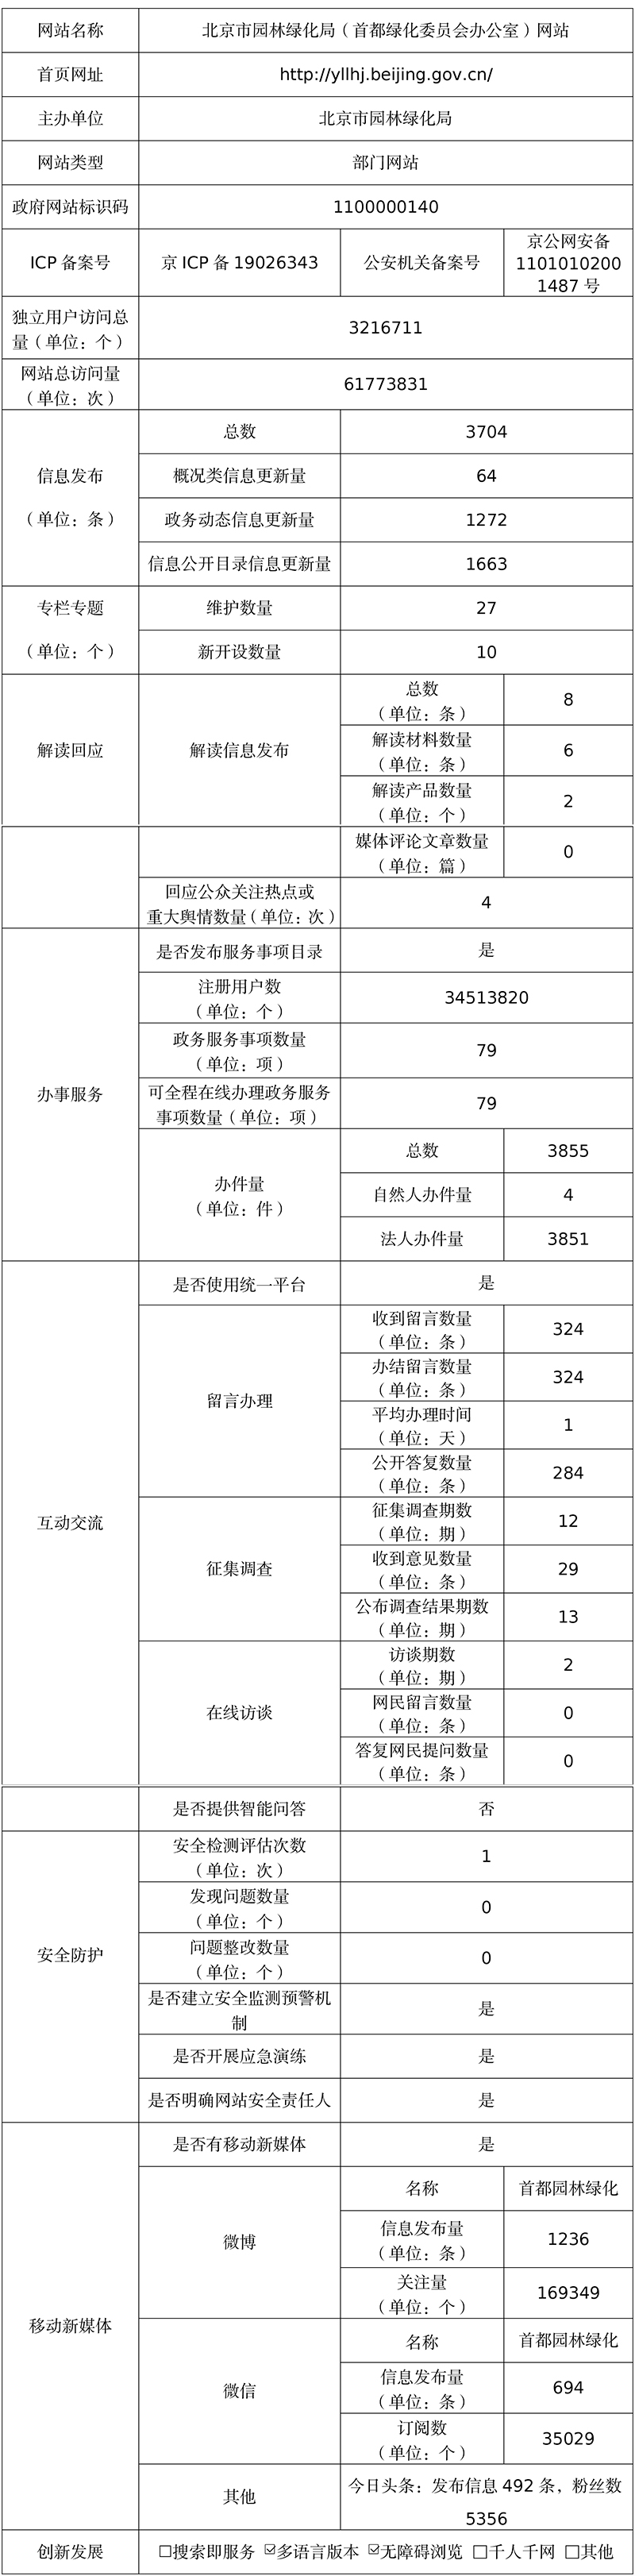 北京市园林绿化局2021年政府网站年度工作报表